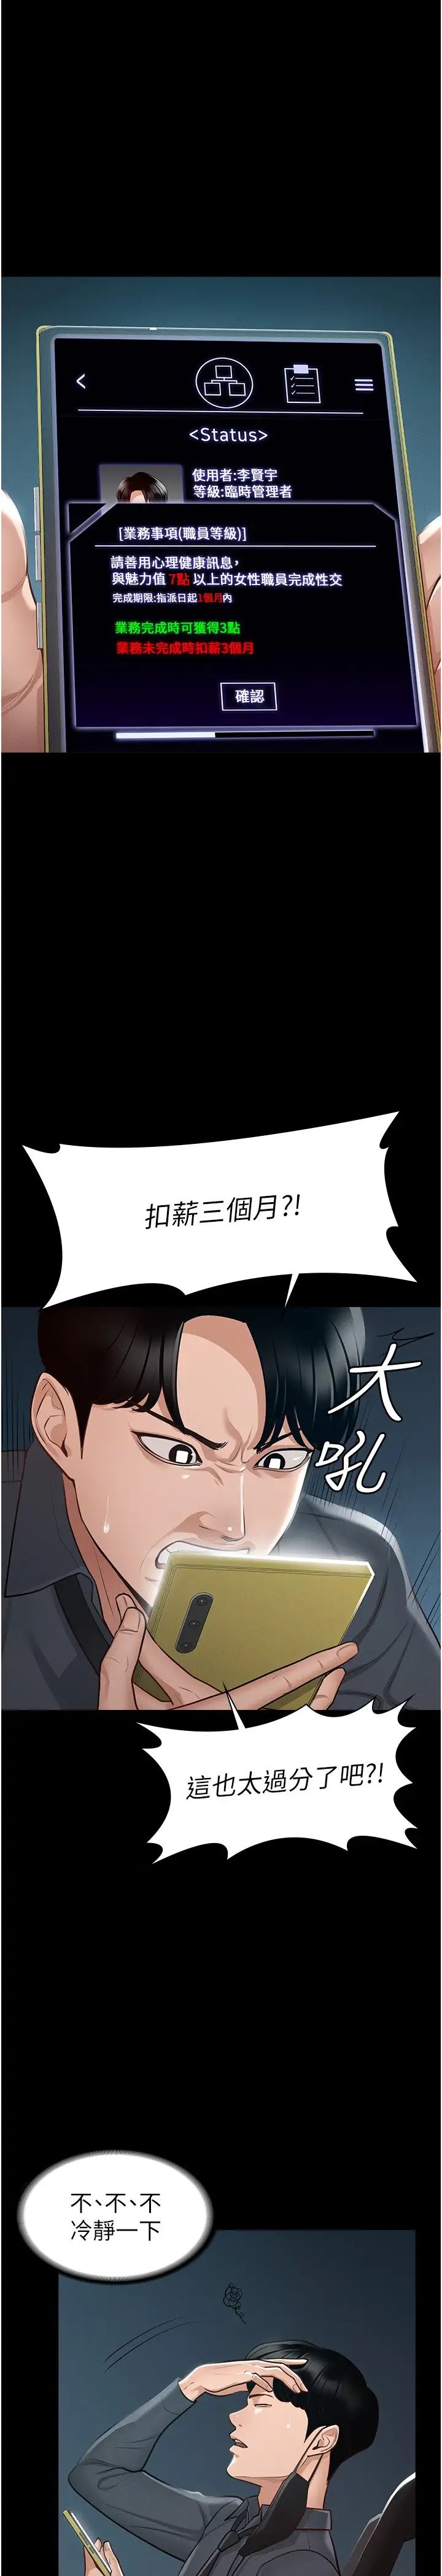 韩国污漫画 超級公務員 第7话 越羞耻的姿势越爽 31